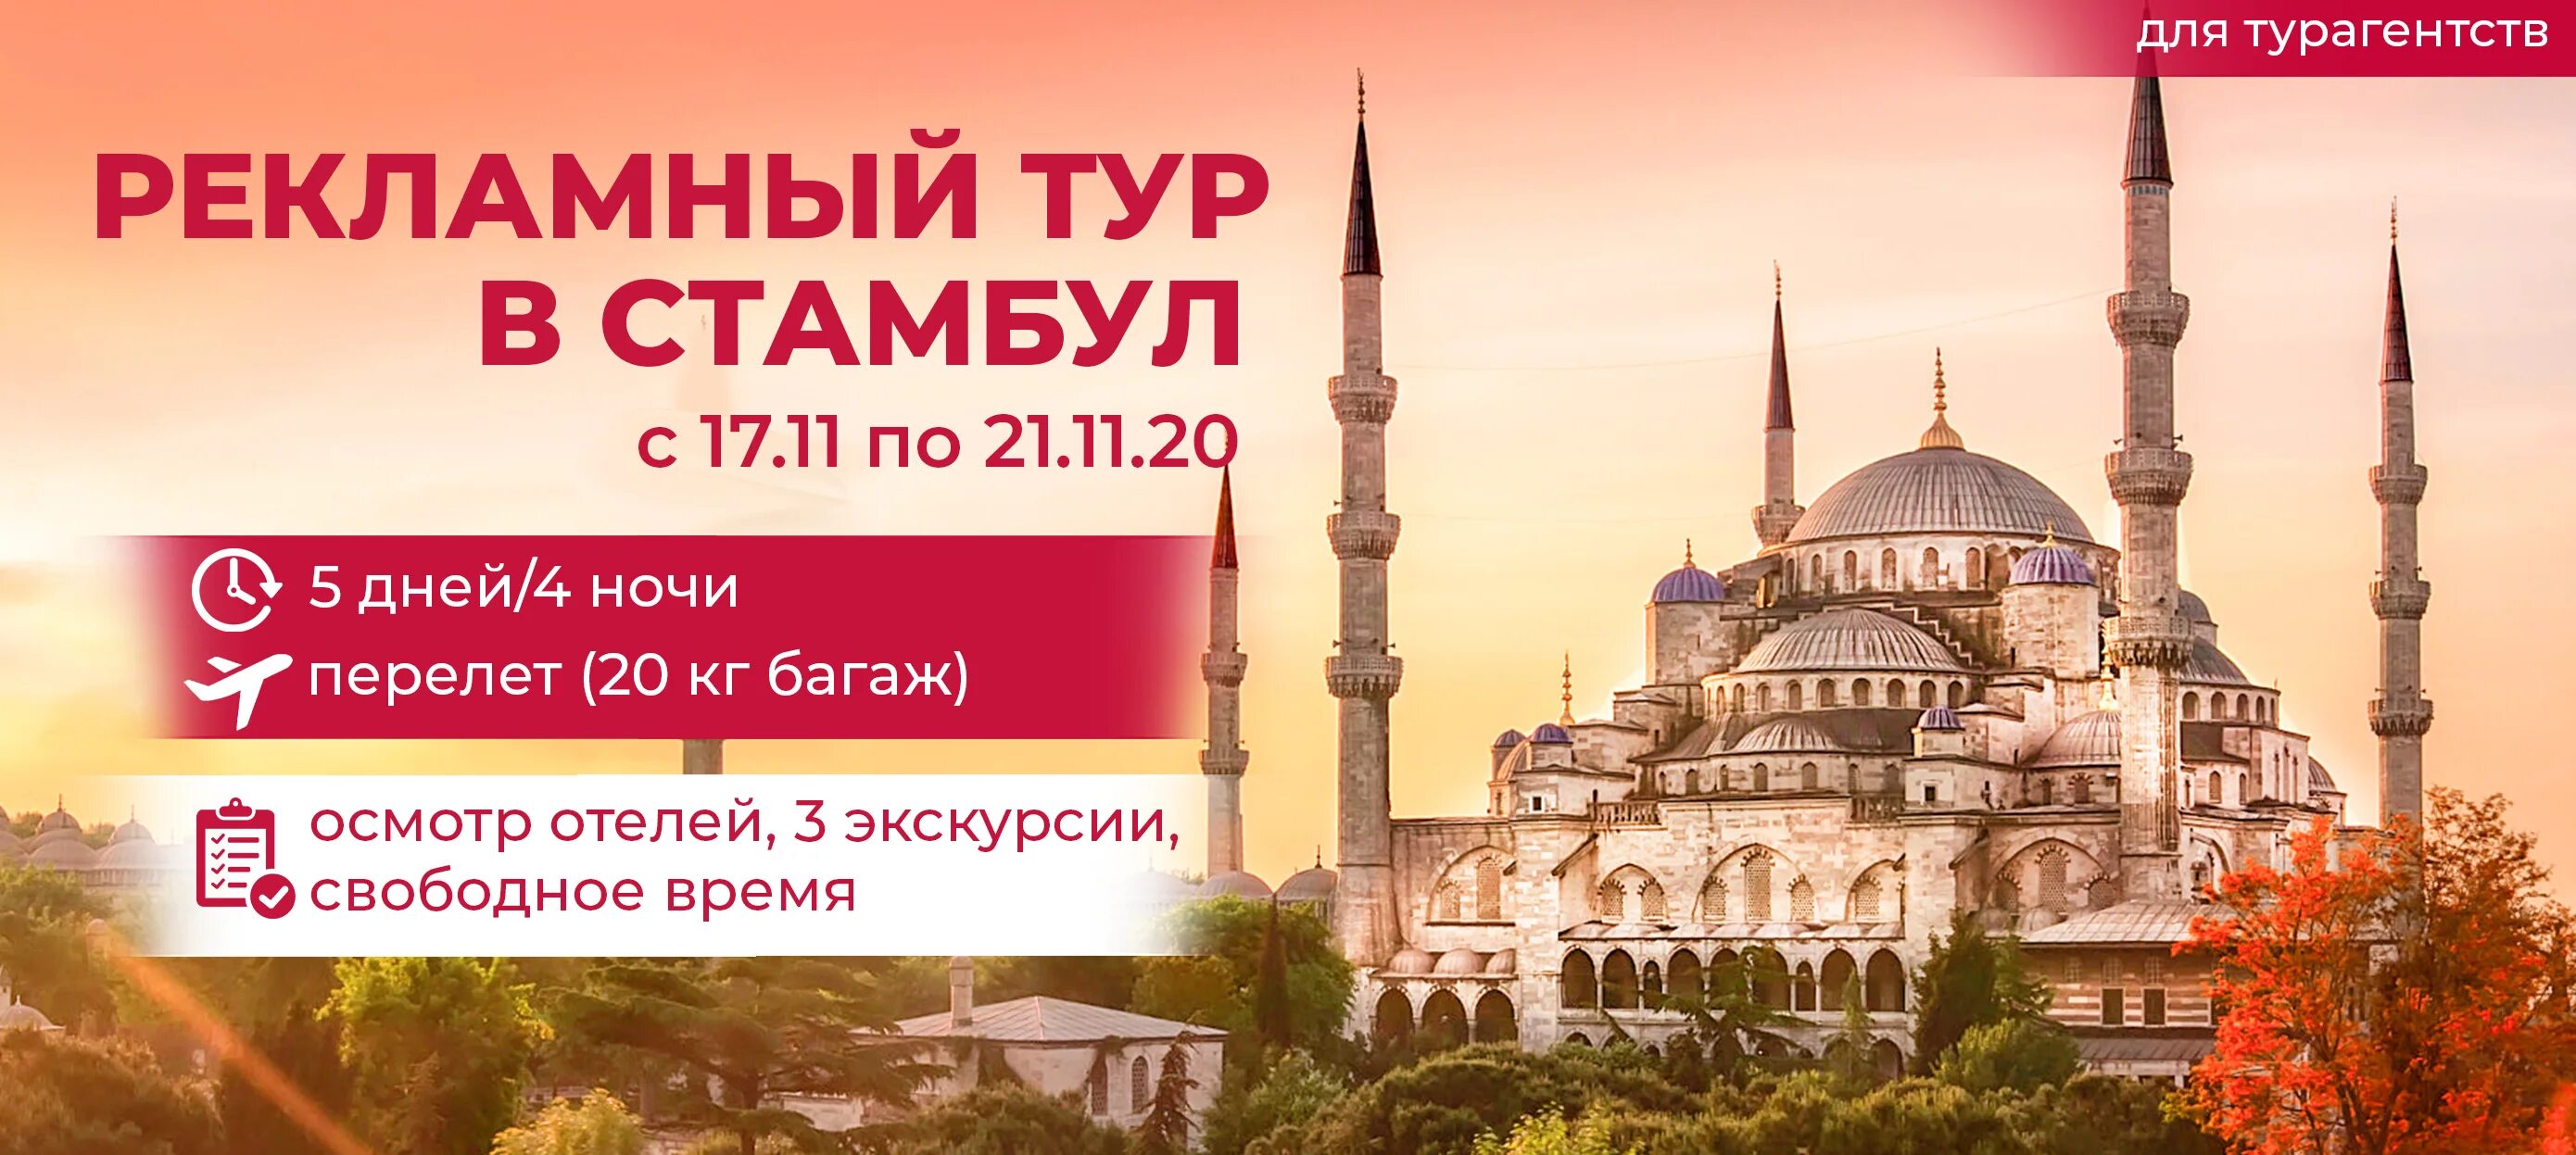 Стамбул у туроператоров. Сертификат на поездку в Стамбул. Турпакеты в Стамбул. Путевки в Стамбул из Москвы.